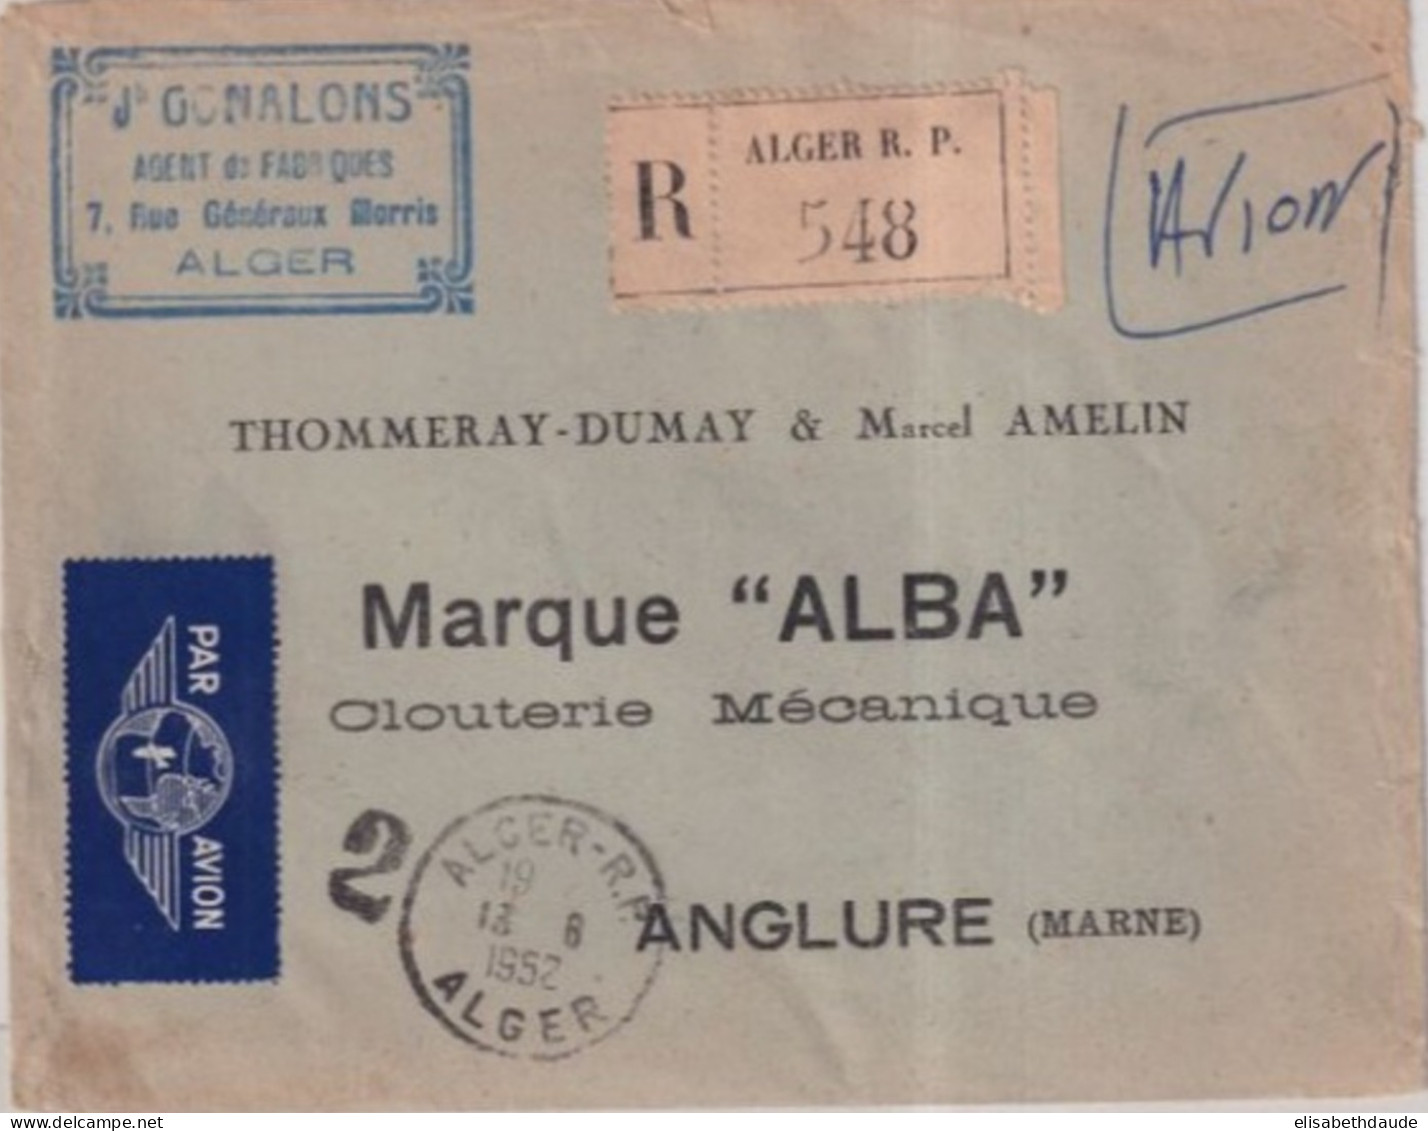 ALGERIE - 1952 - CACHET "GUICHET De RECOMMANDE" N°2 De ALGER - ENVELOPPE AVION => ANGLURE (MARNE) - Covers & Documents